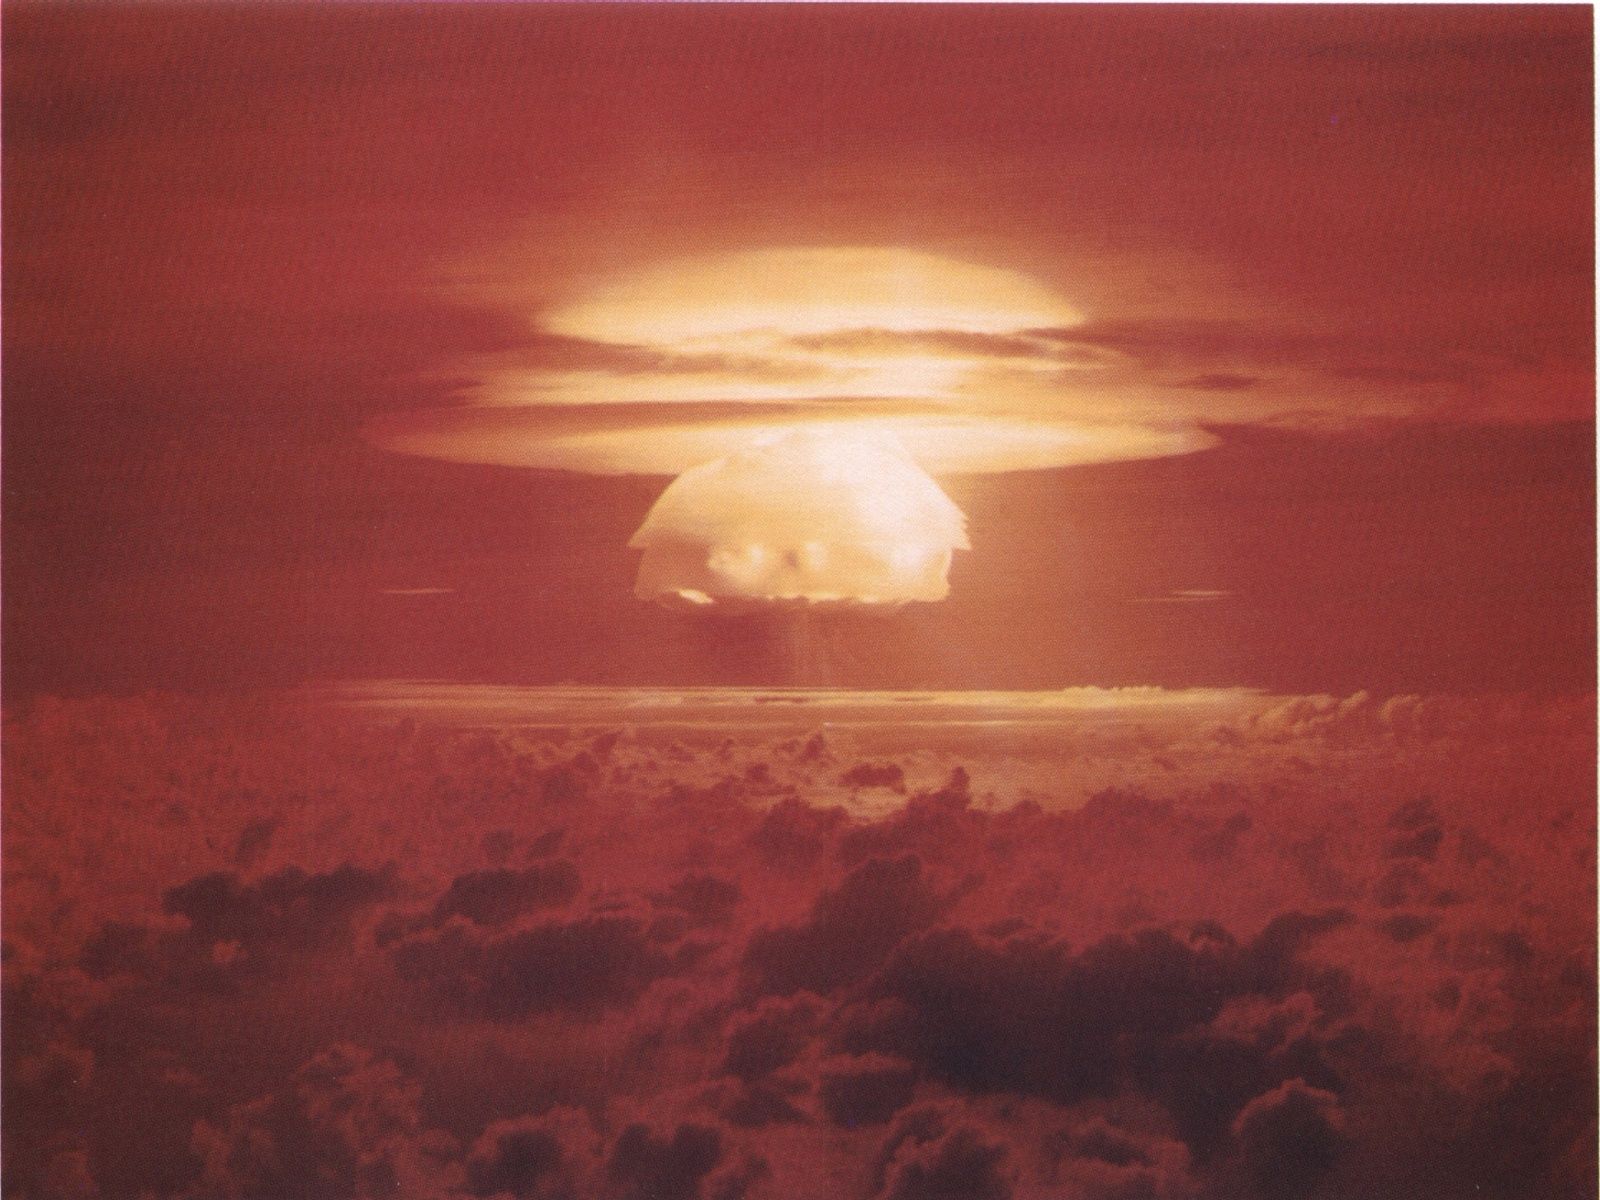 W80 (nuclear warhead) - Wikipedia